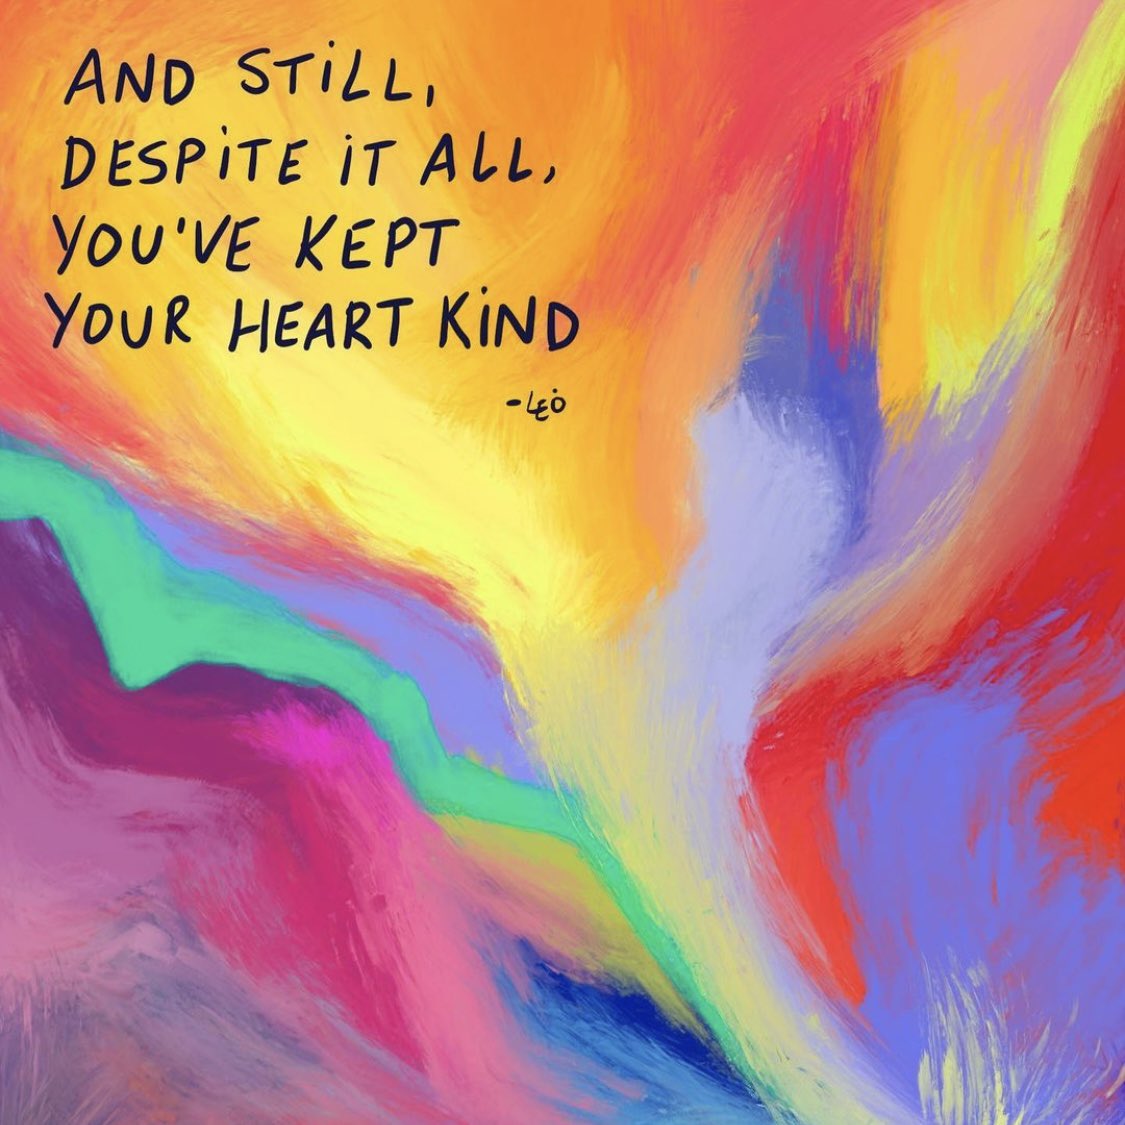 And still, despite it all, you’ve kept your heart kind 💕

Image: @soleoado